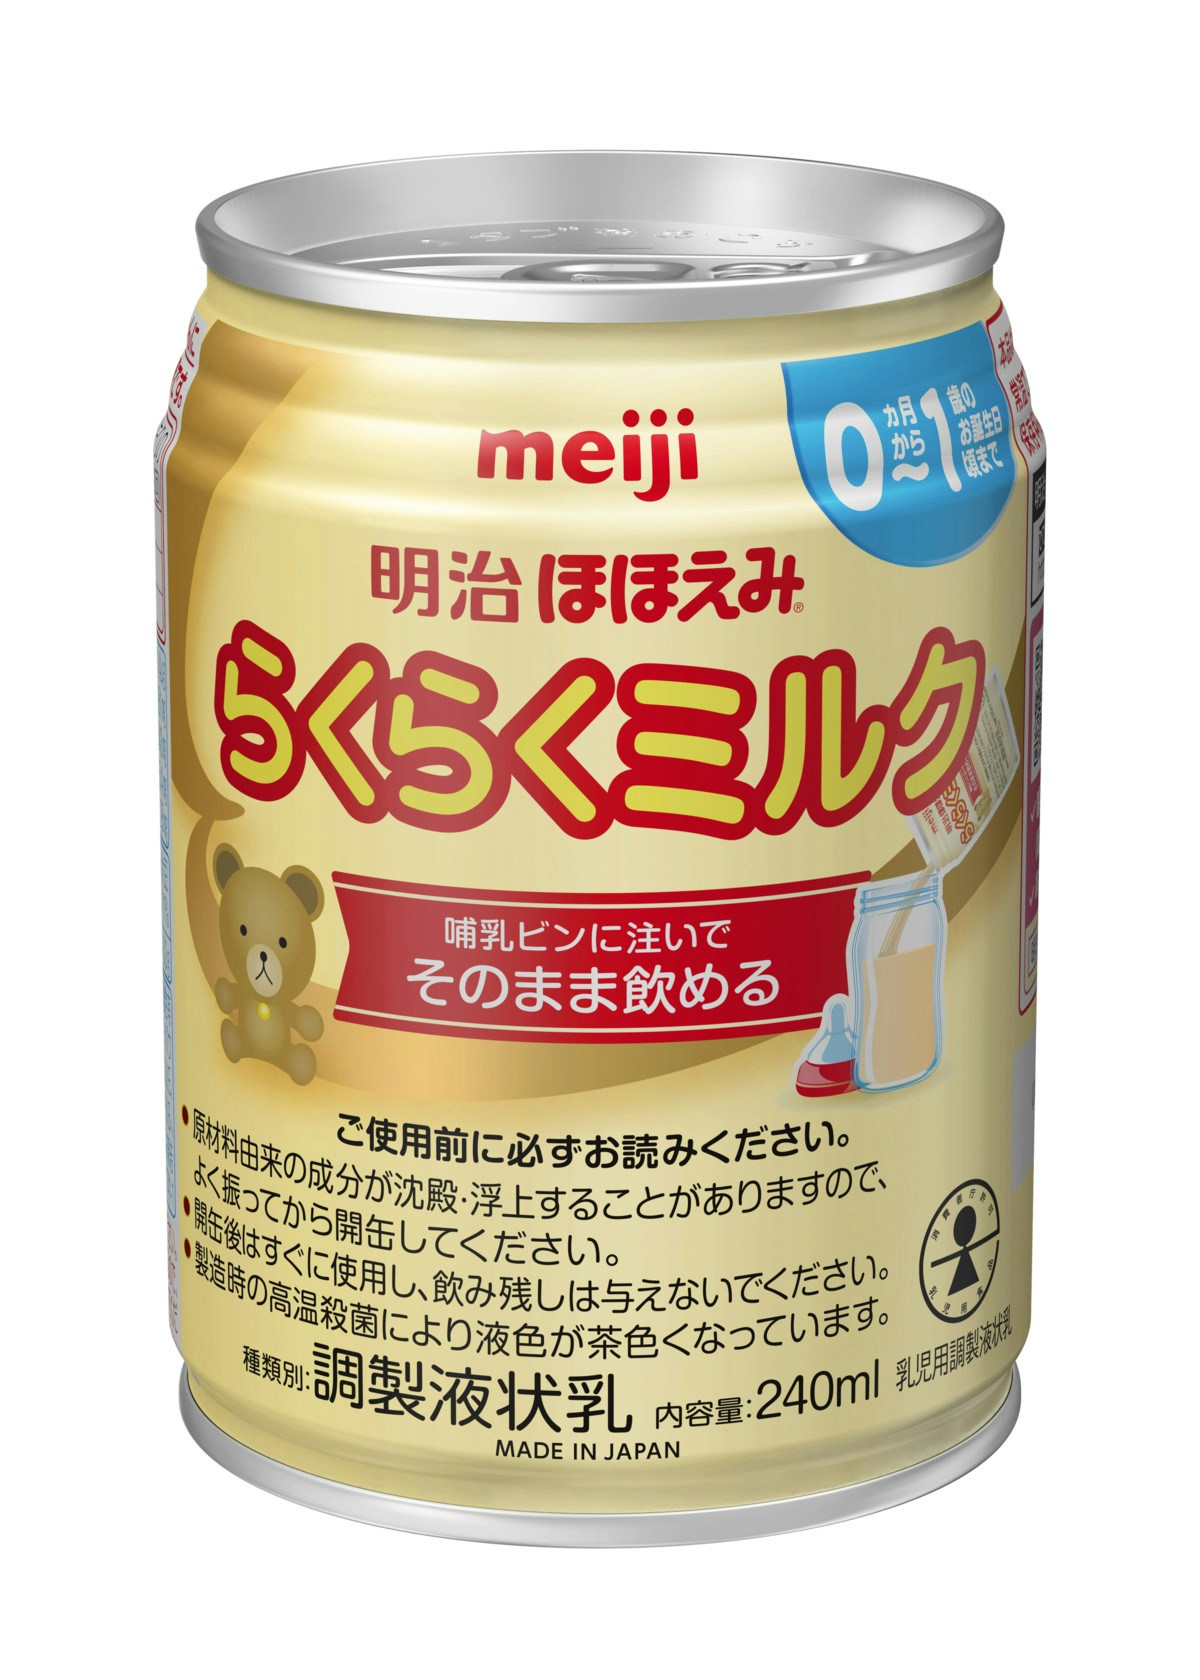 ほほえみ ミルク 800g✖︎8缶 もちろん未開封 - 食品